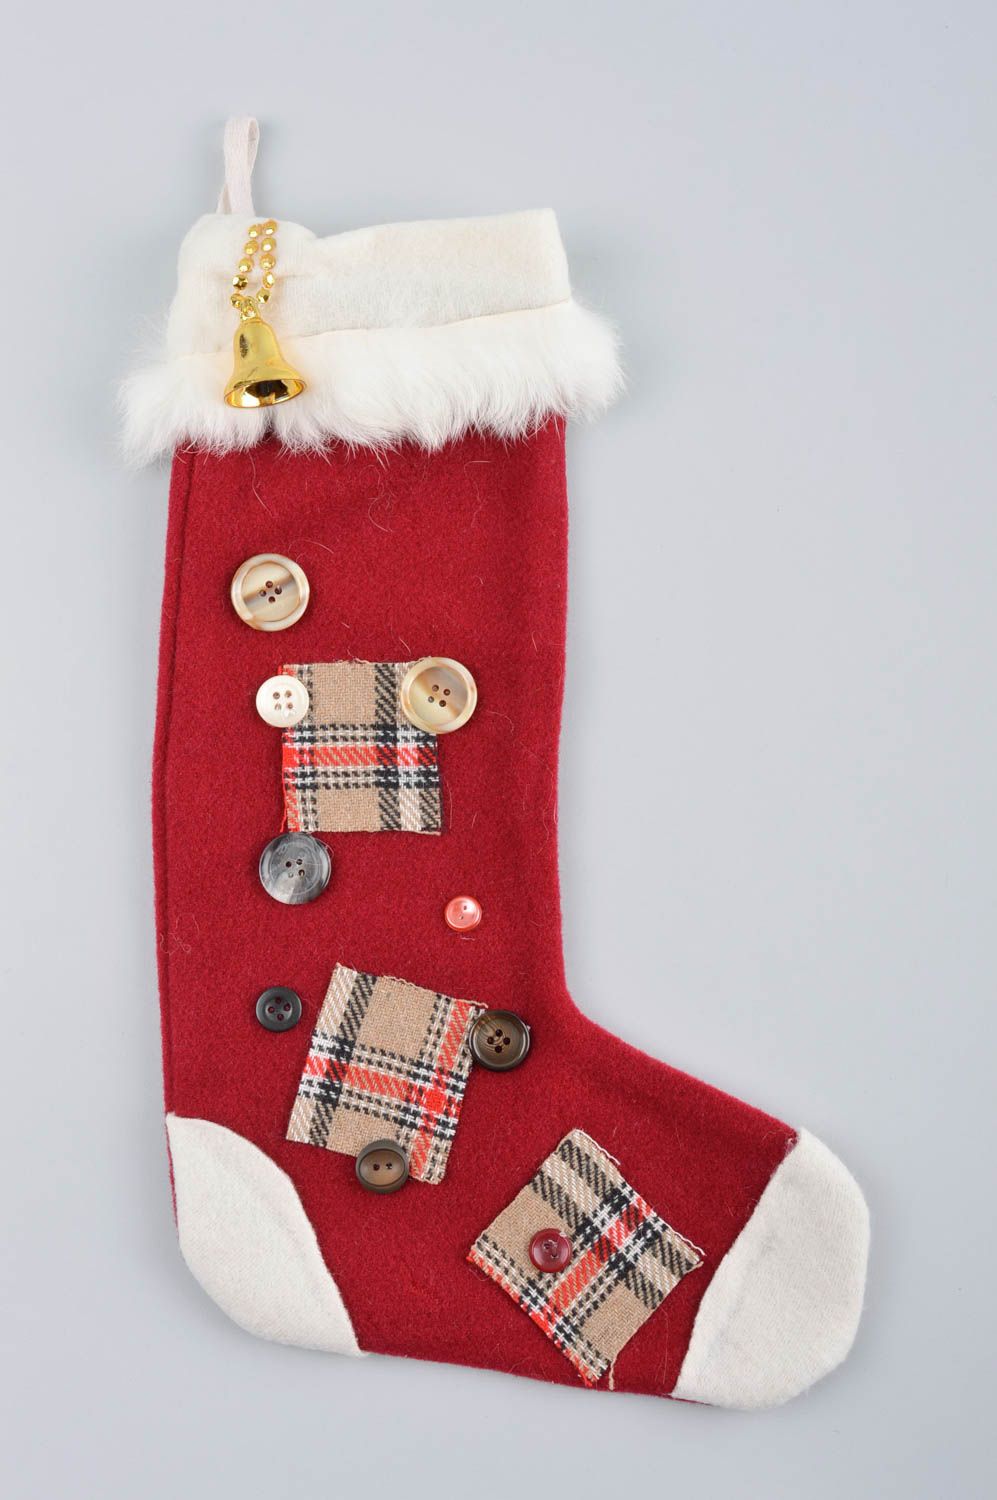 Socke zu Weihnachten handmade Deko Tannenbaum Schmuck Weihnachten Deko rot weiß foto 3